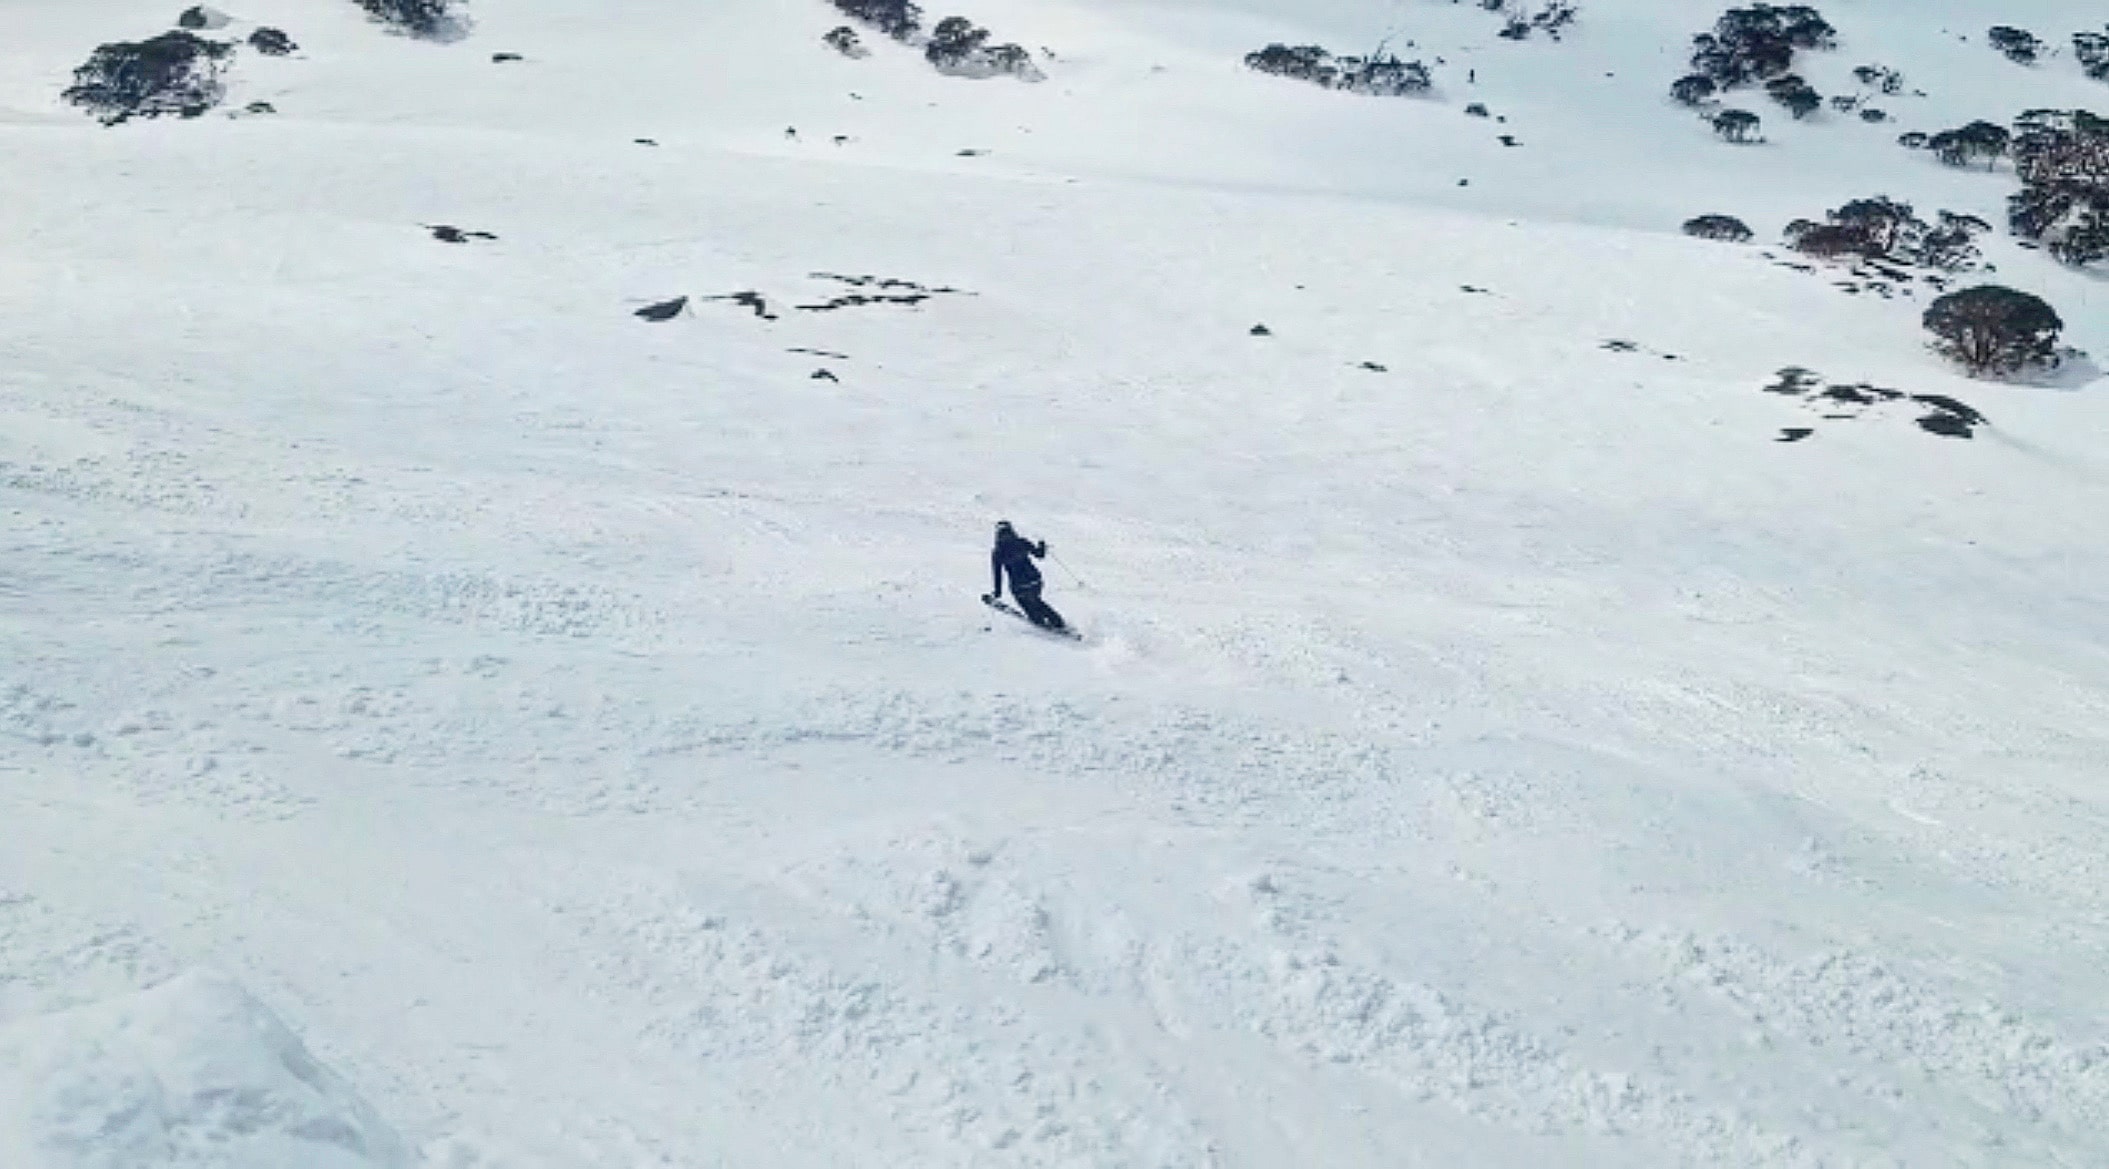 Julia skiing